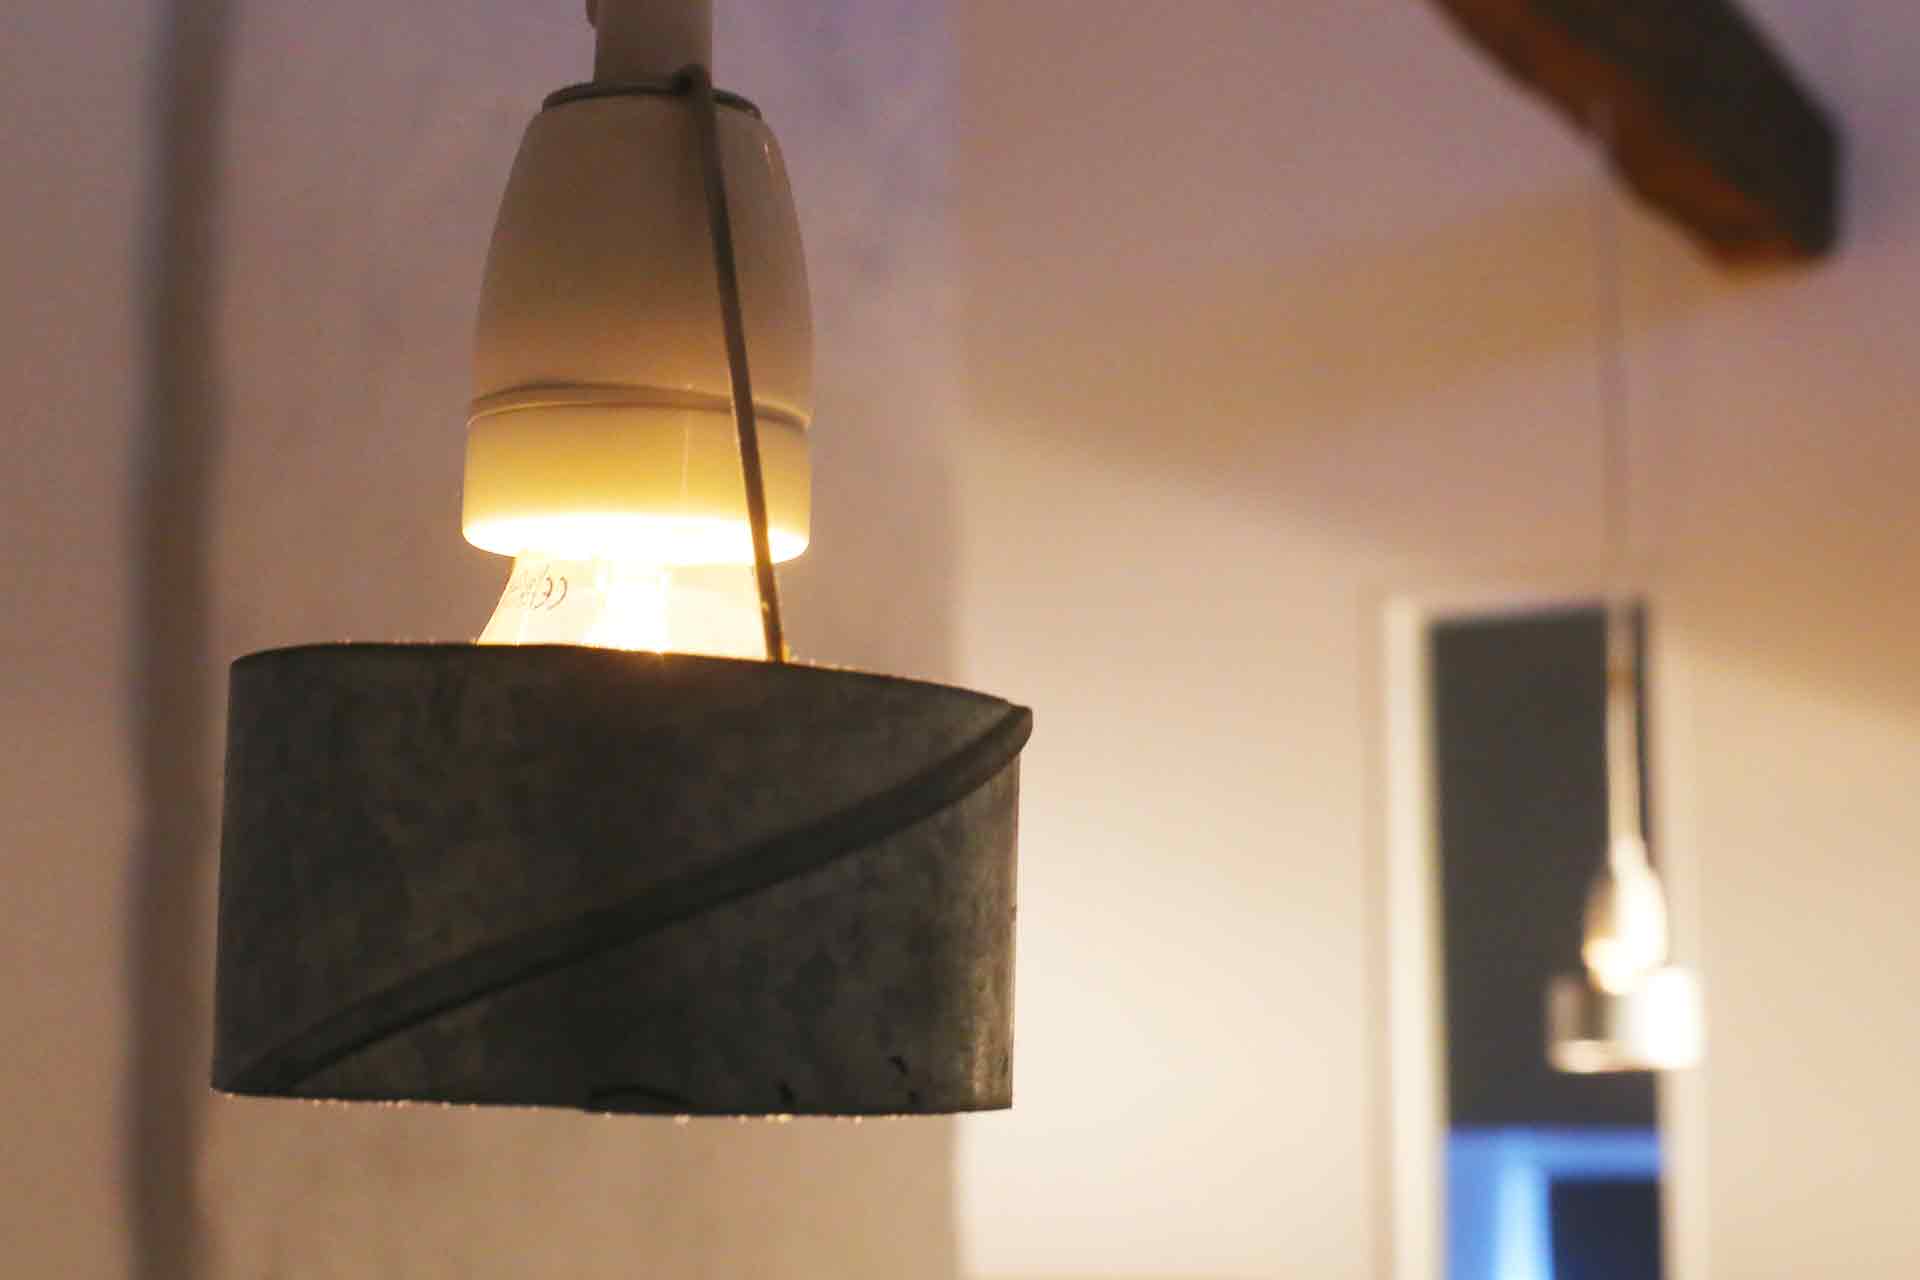 En glödlampa hänger från taket i en porslinshållare med ventilationsrör runt sig. Ljuset sprids uppåt och neråt.